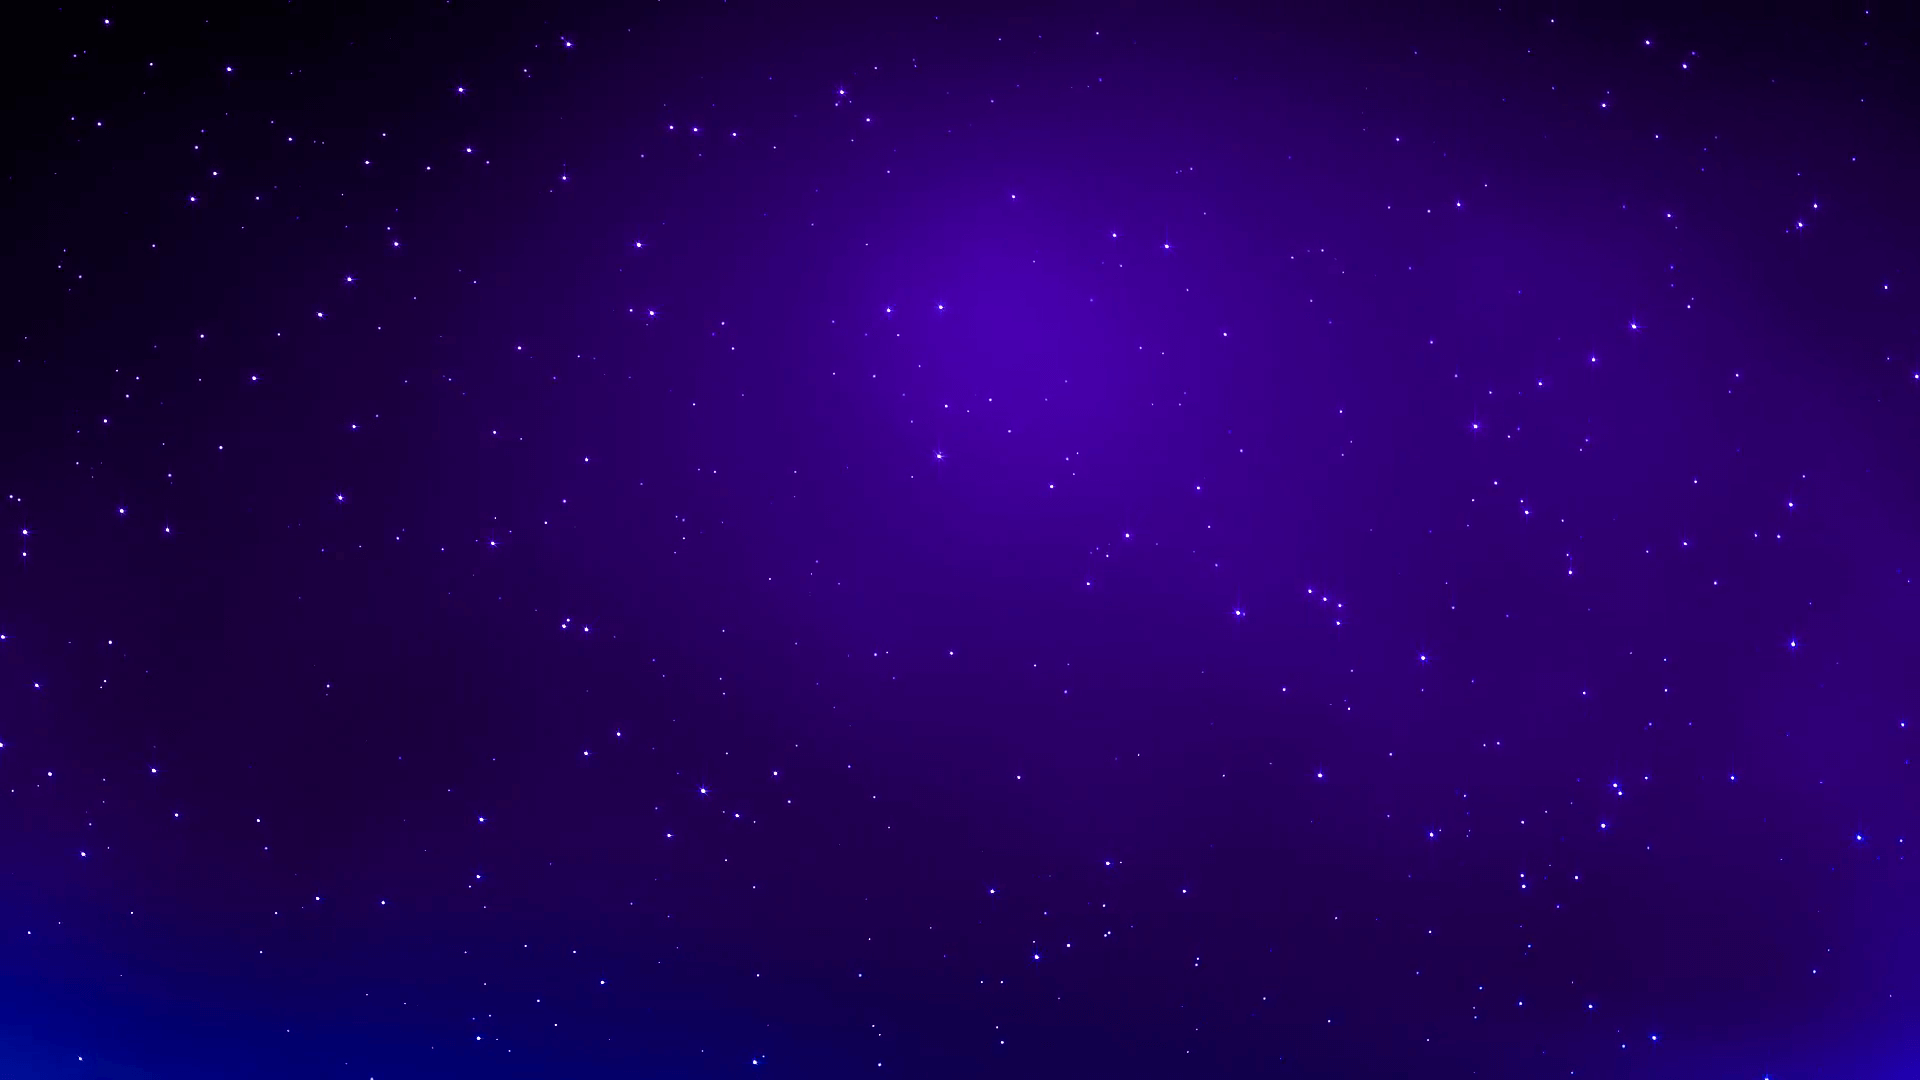 stars-twinkling-in-purple-sky-in-space_b1twxb2lb__F0000 | Wills Eye ...